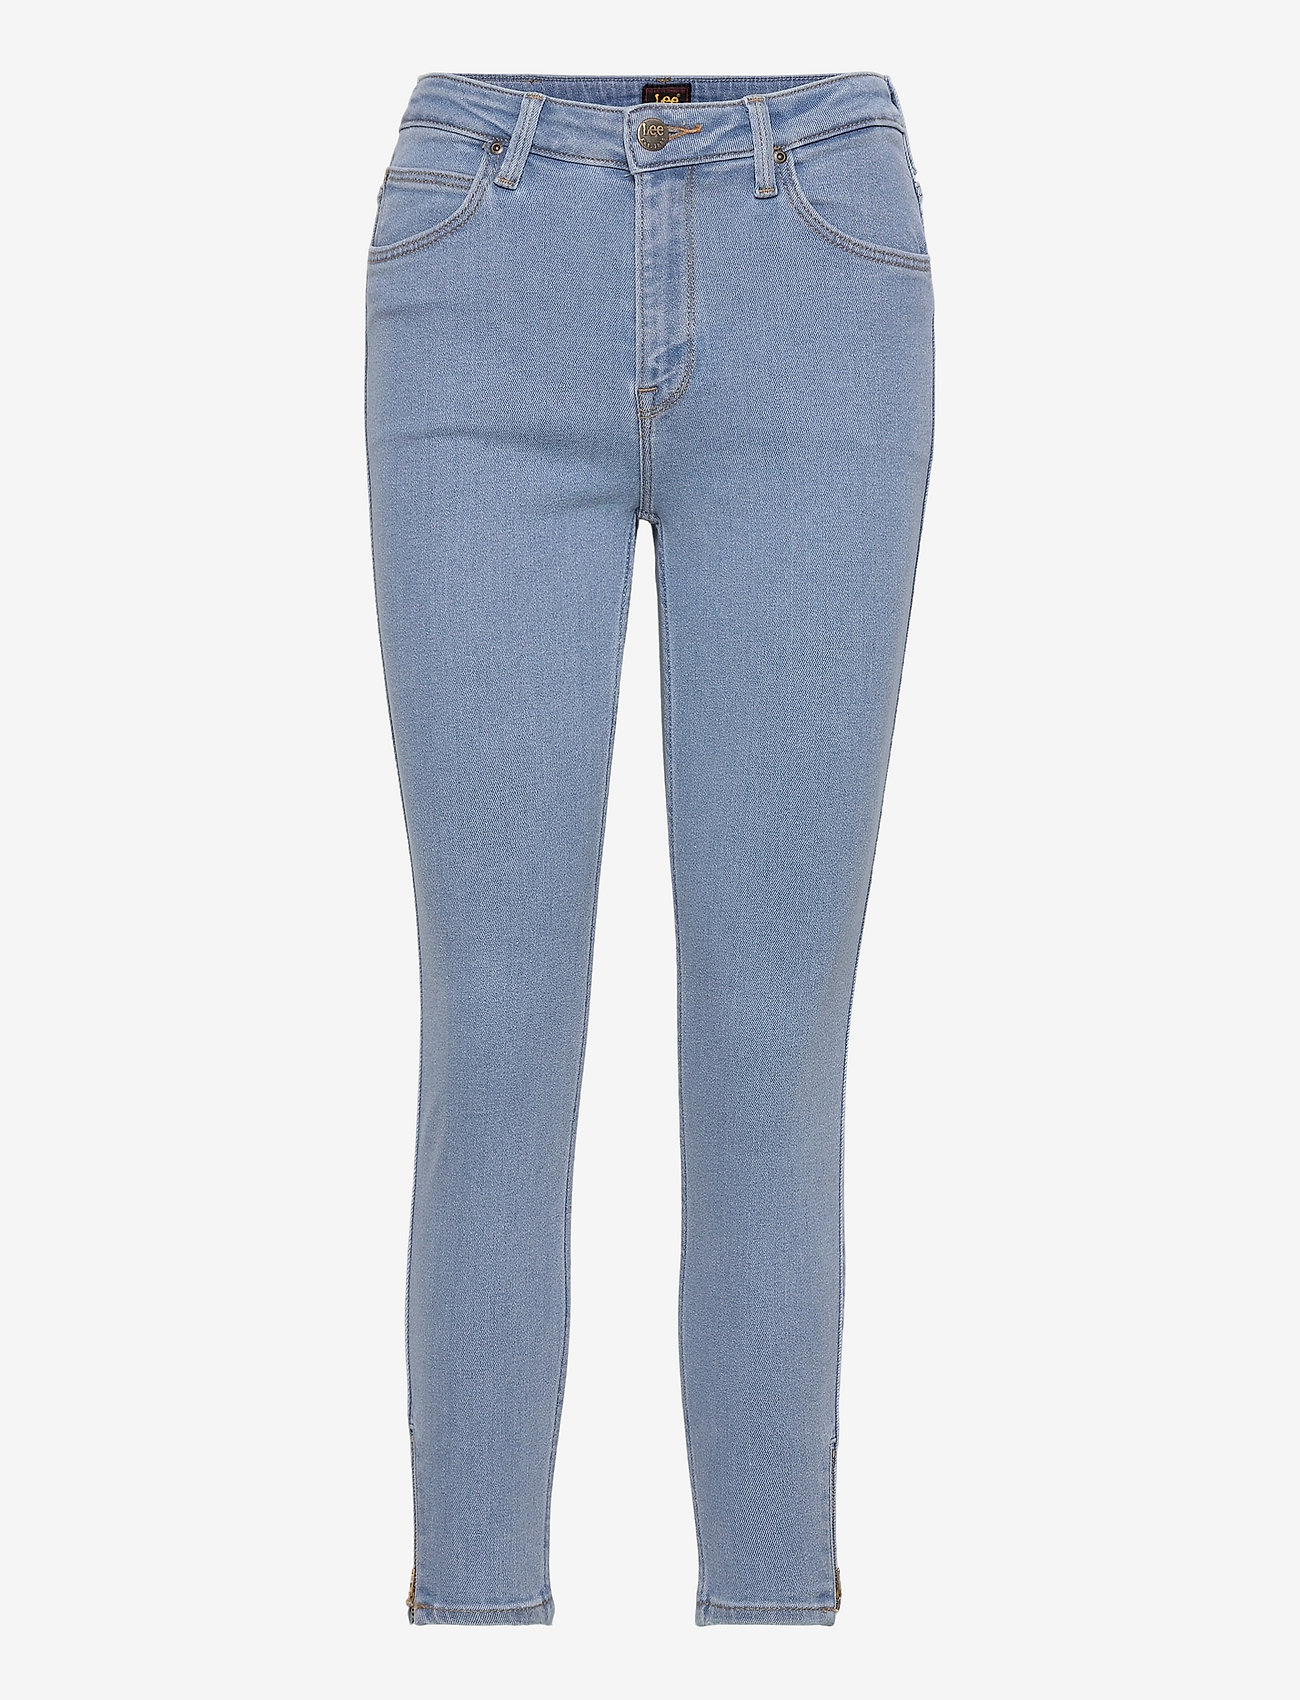 Lee Jeans - SCARLETT HIGH ZIP - skinny jeans - light ruby - 0